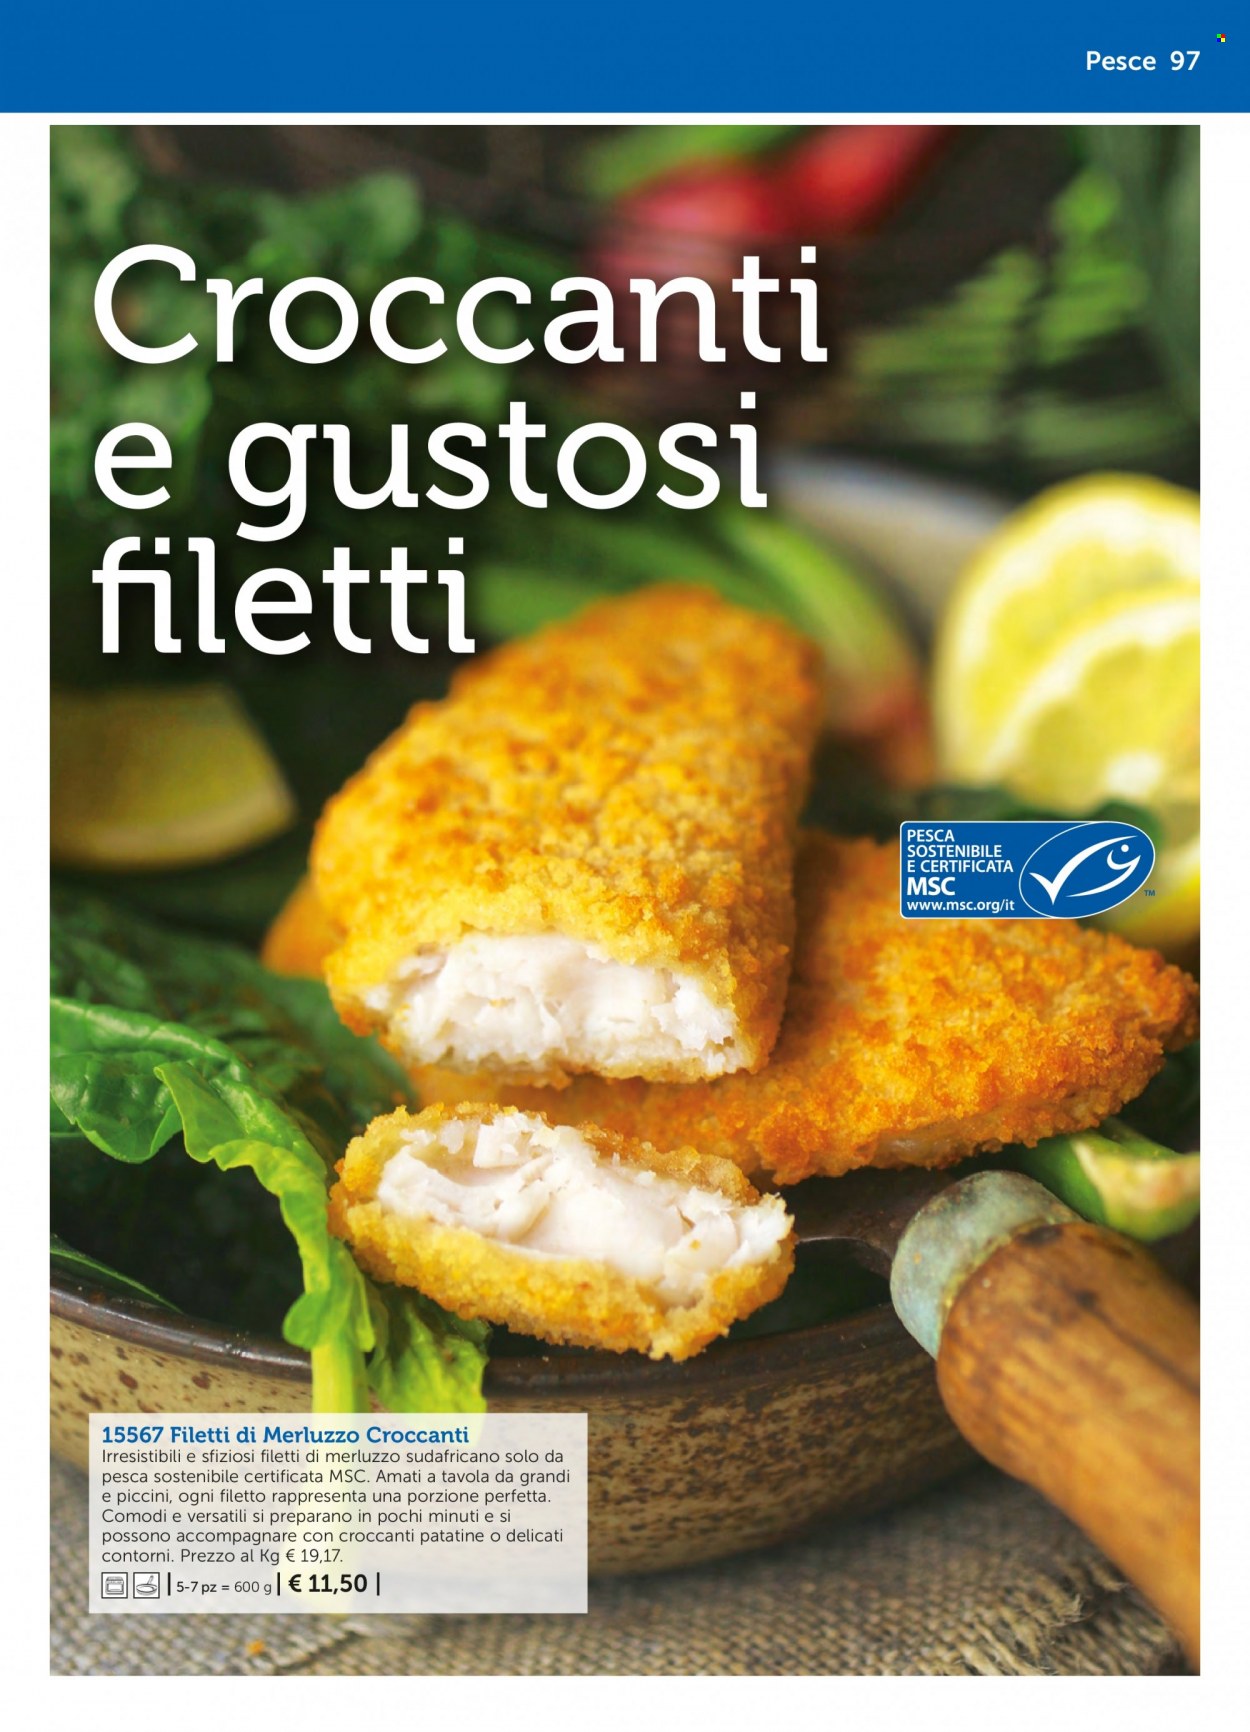 thumbnail - Volantino Bofrost - Prodotti in offerta - filetti di merluzzo, pesce, merluzzo. Pagina 97.